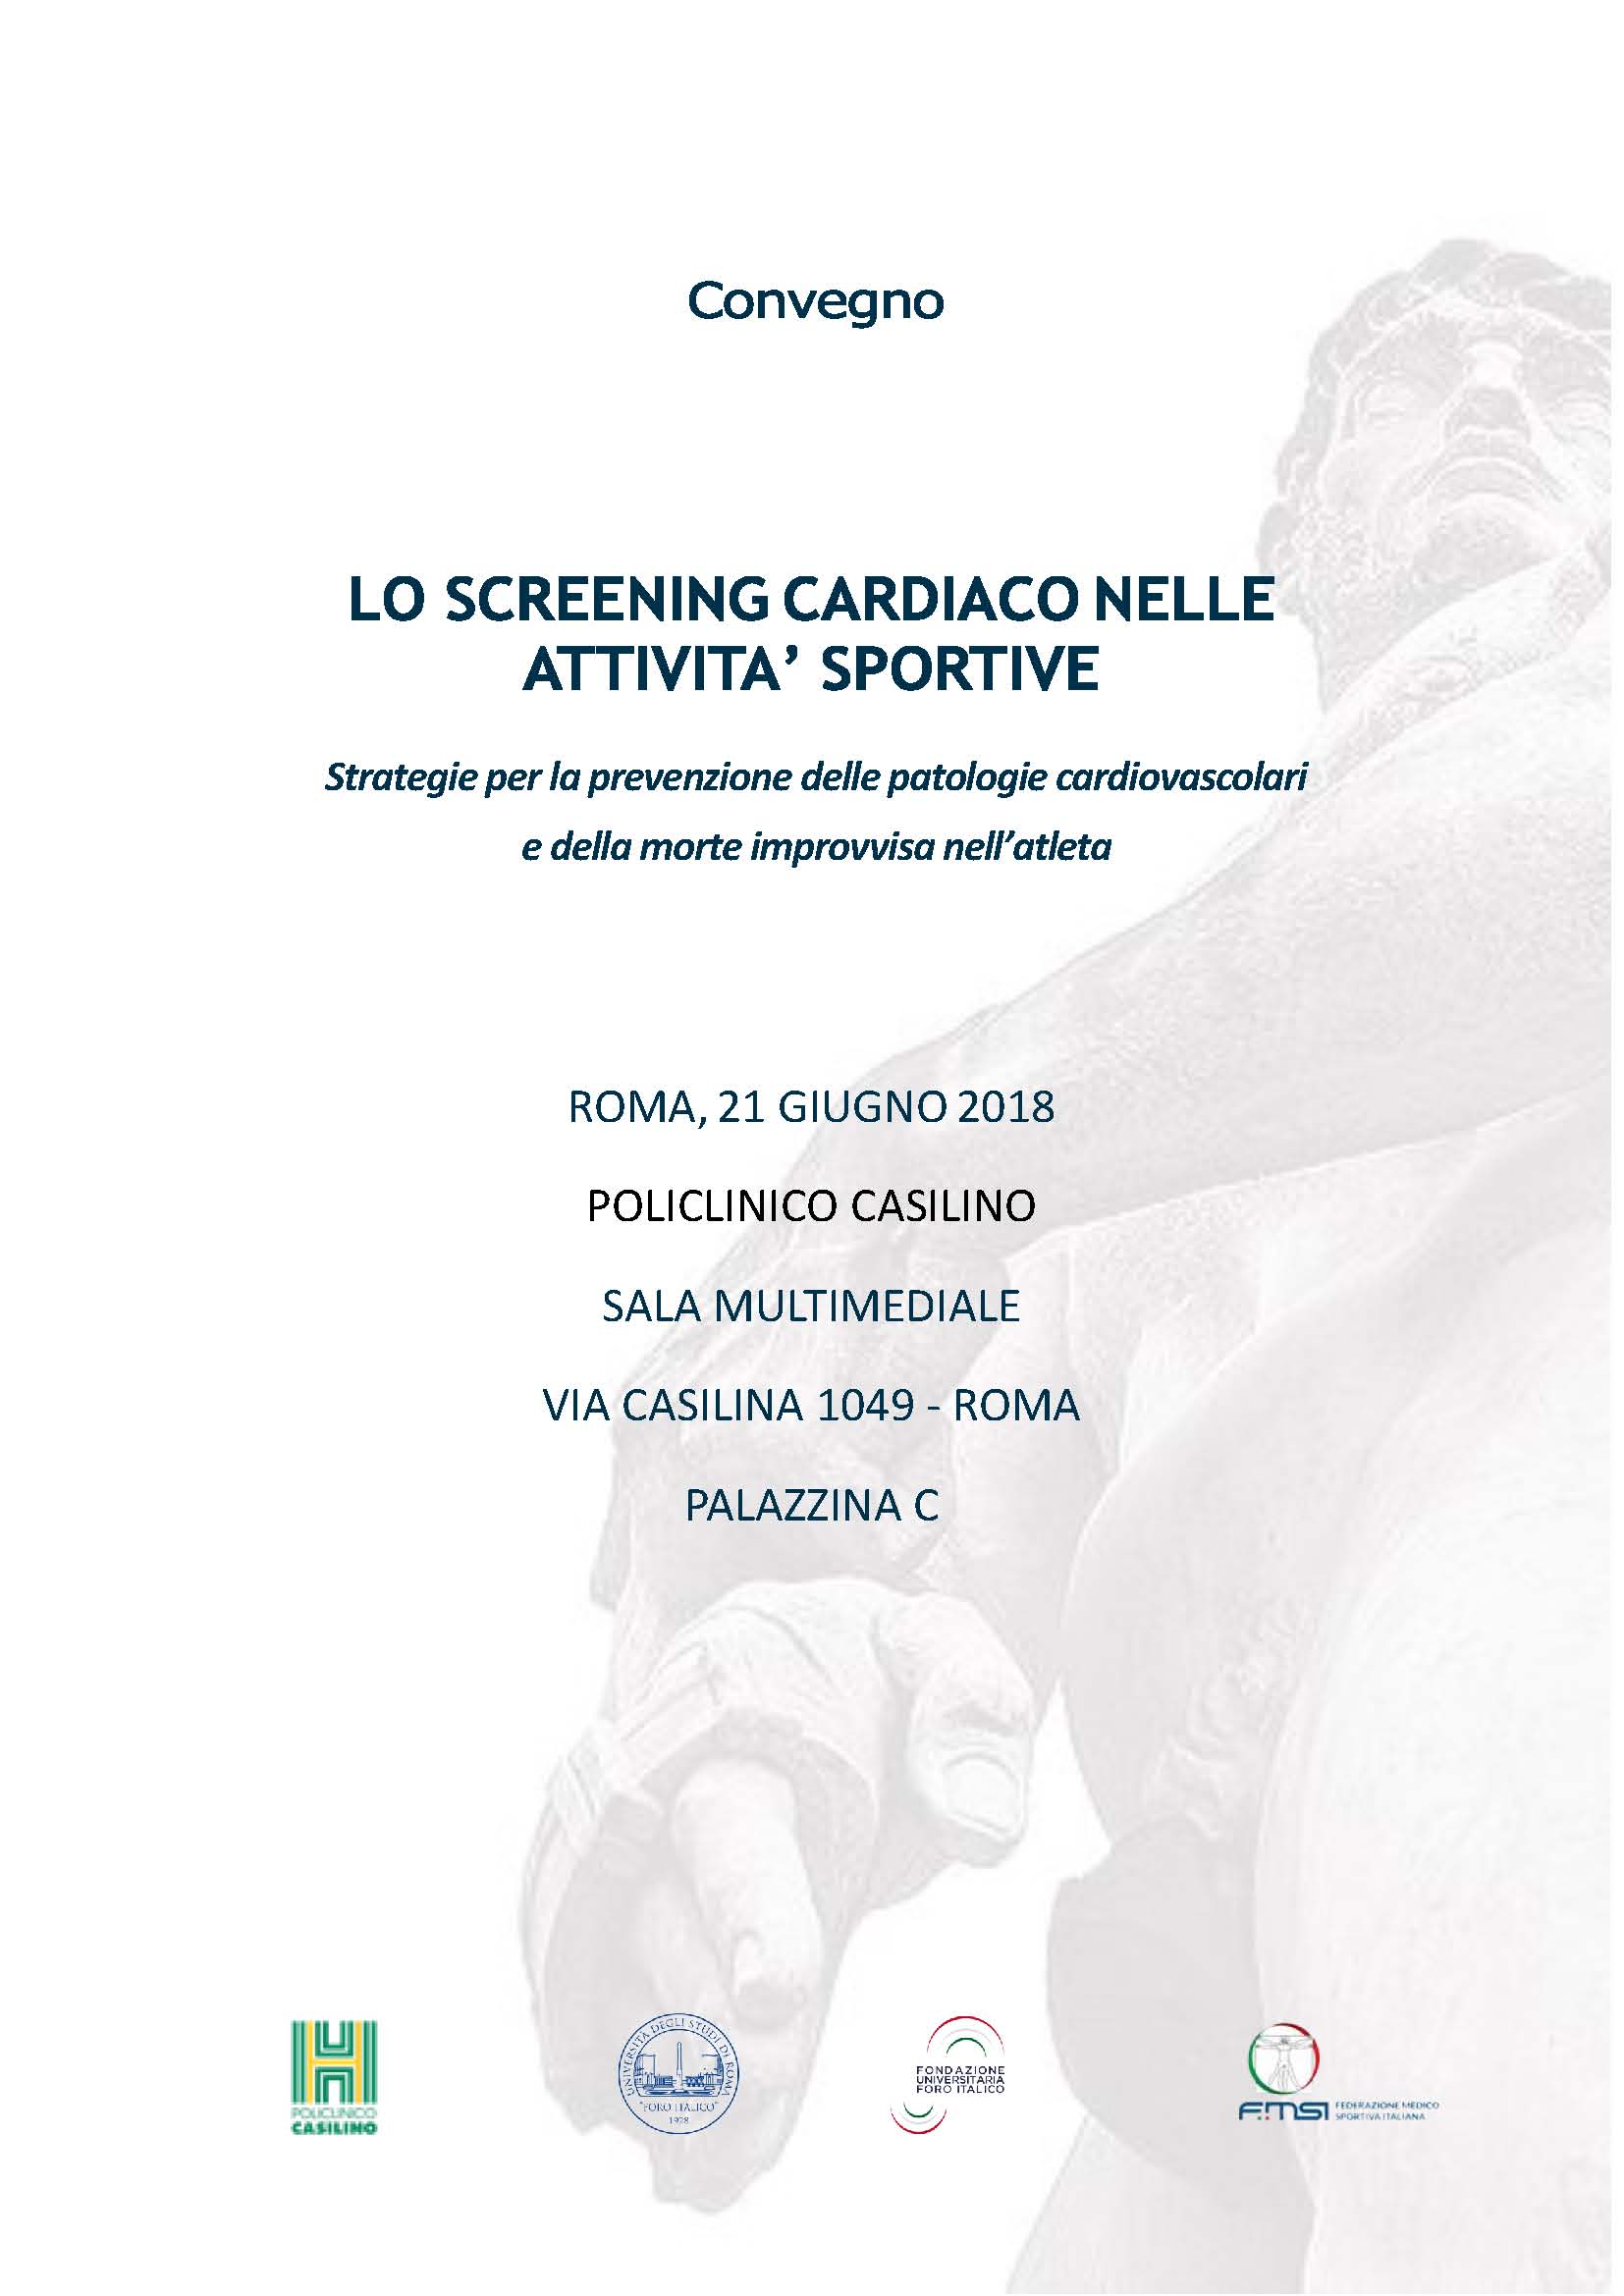 Convegno "Lo screening cardiaco nelle attività sportive" - Roma 21 Giugno 2018